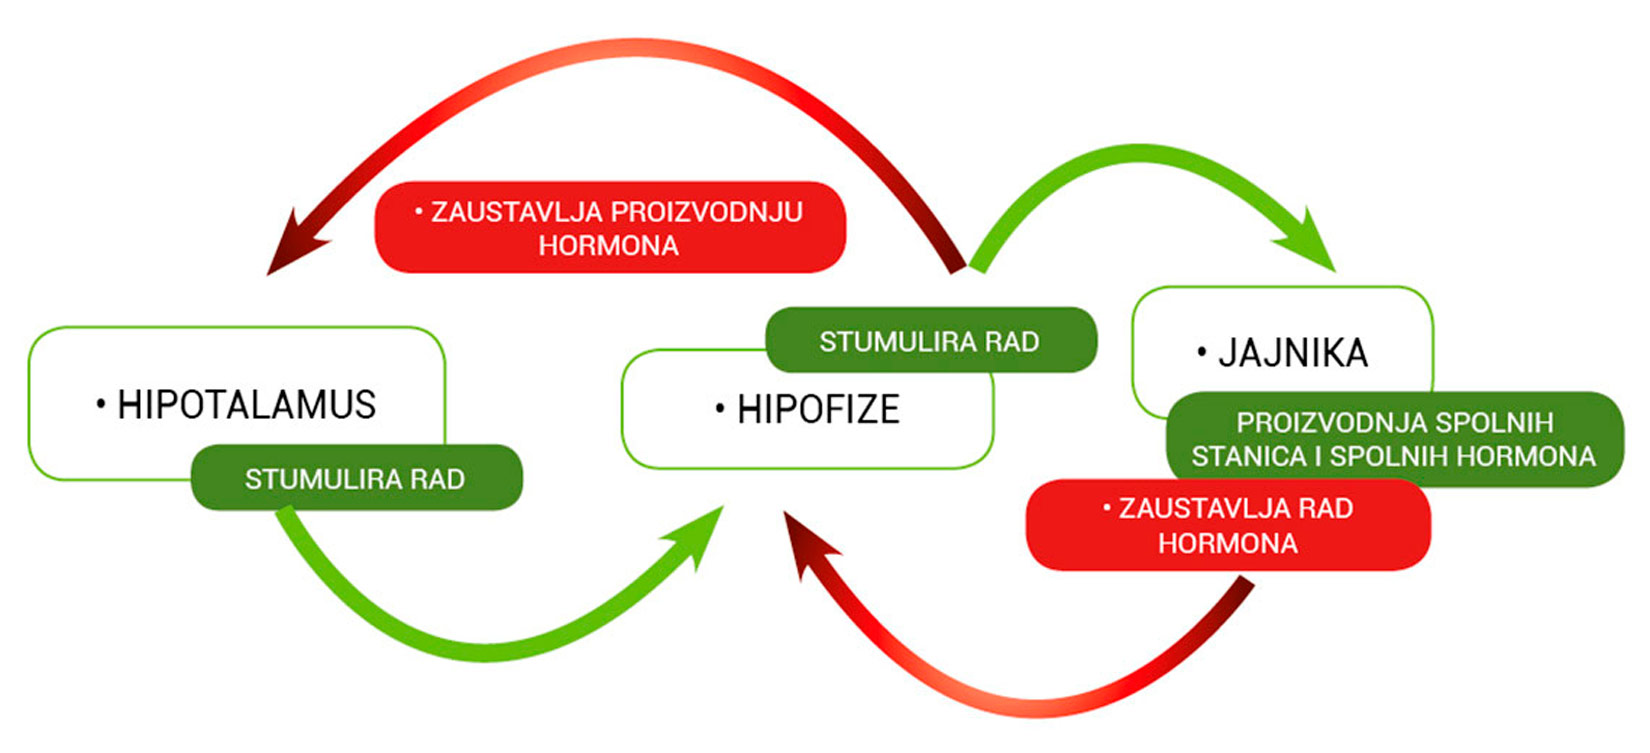 Mehanizam pokazuje kako hipotalamus stimulira rad hipofize koja stimulira rad jajnika koji proizvode spolne stanice i hormone. Nakon toga se zaustavlja proizvodnja hormona koji potiču proizvodnju hormona jajnika.